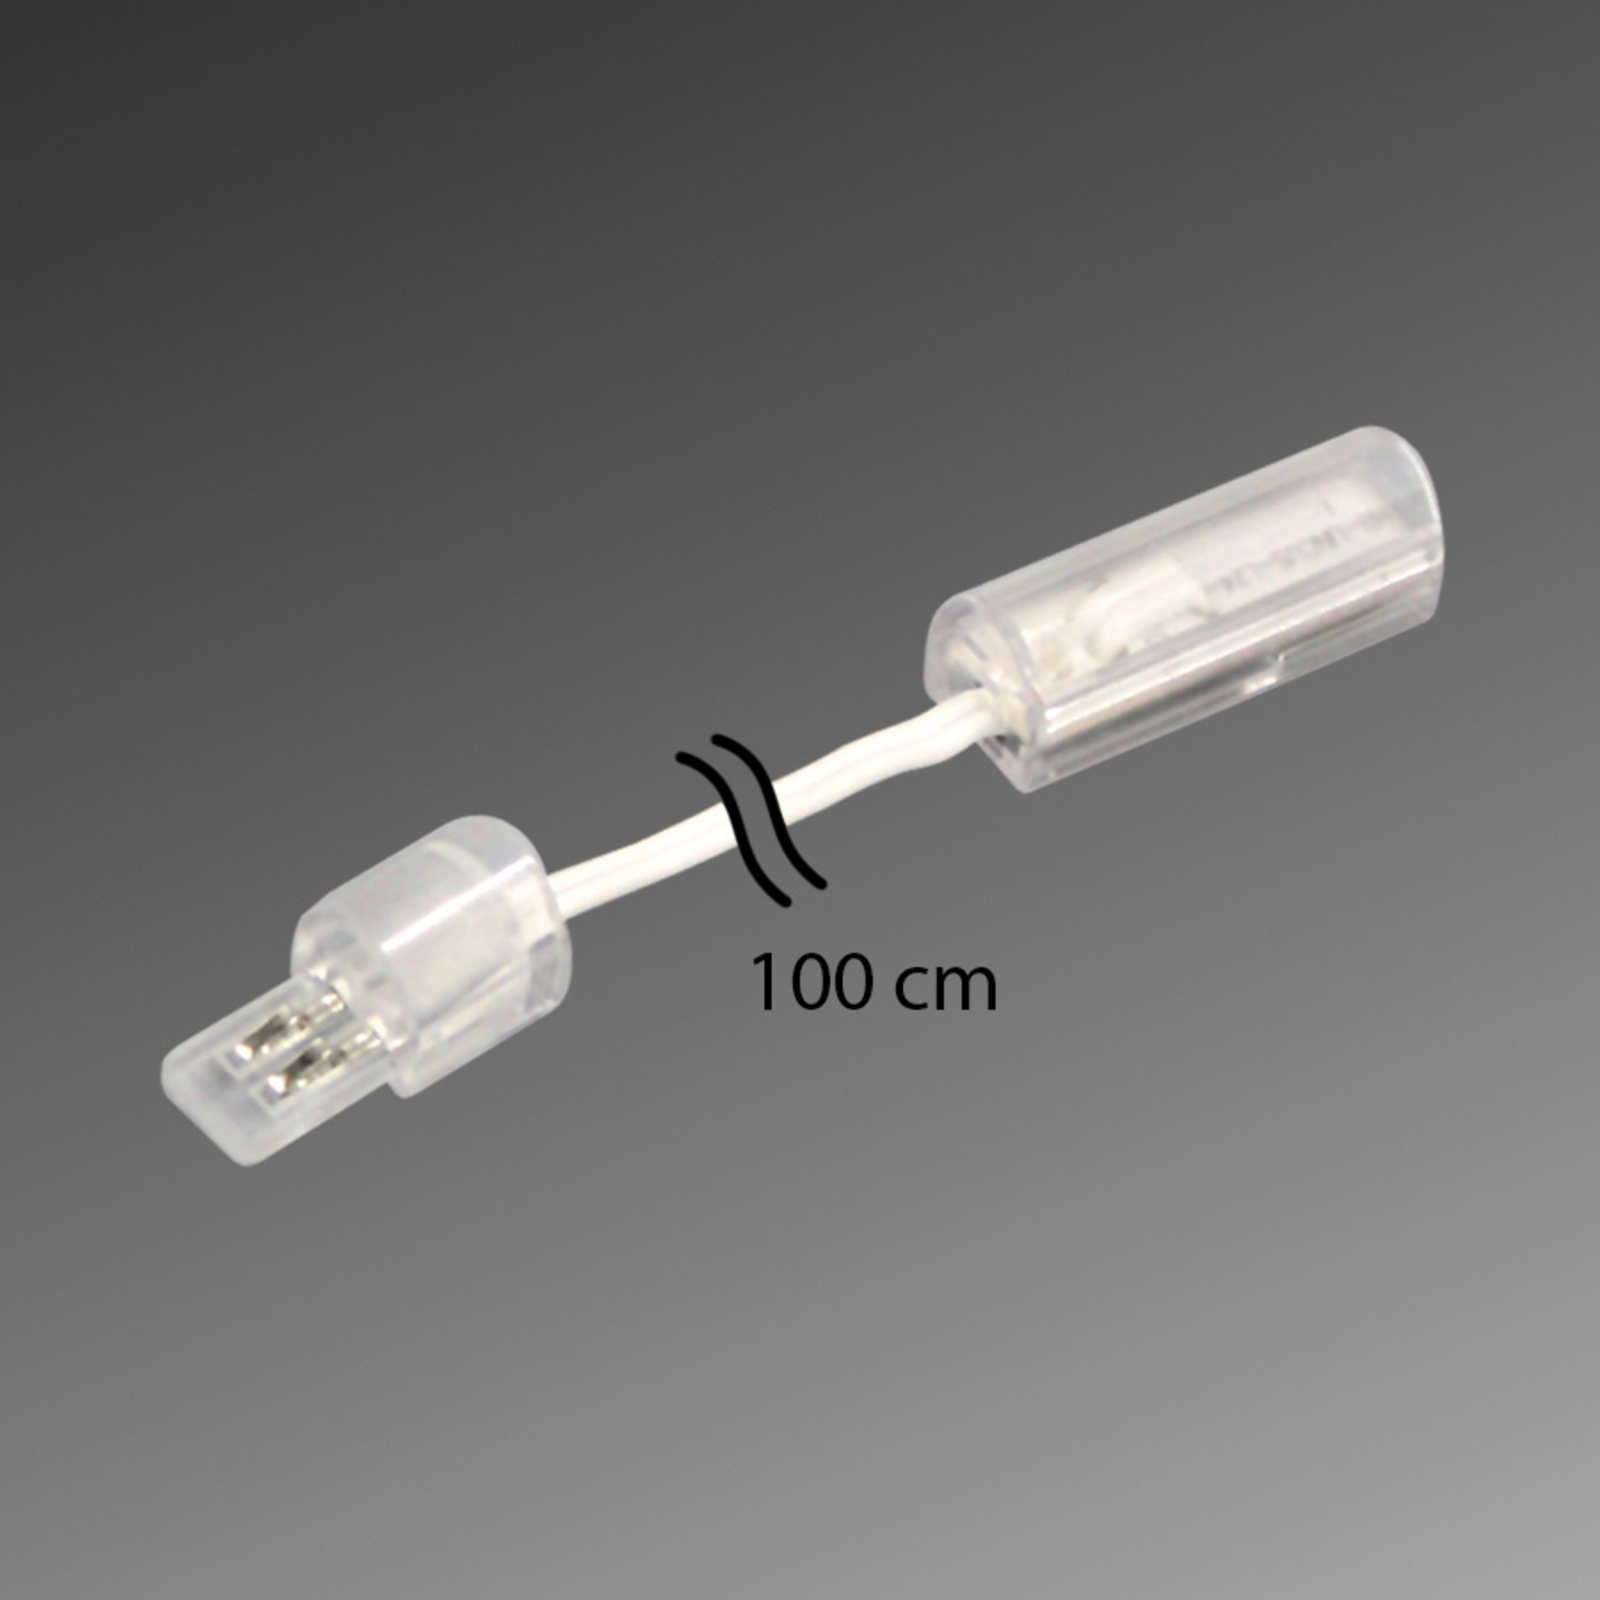 Przewód połączeniowy do LED STICK 2, 100 cm